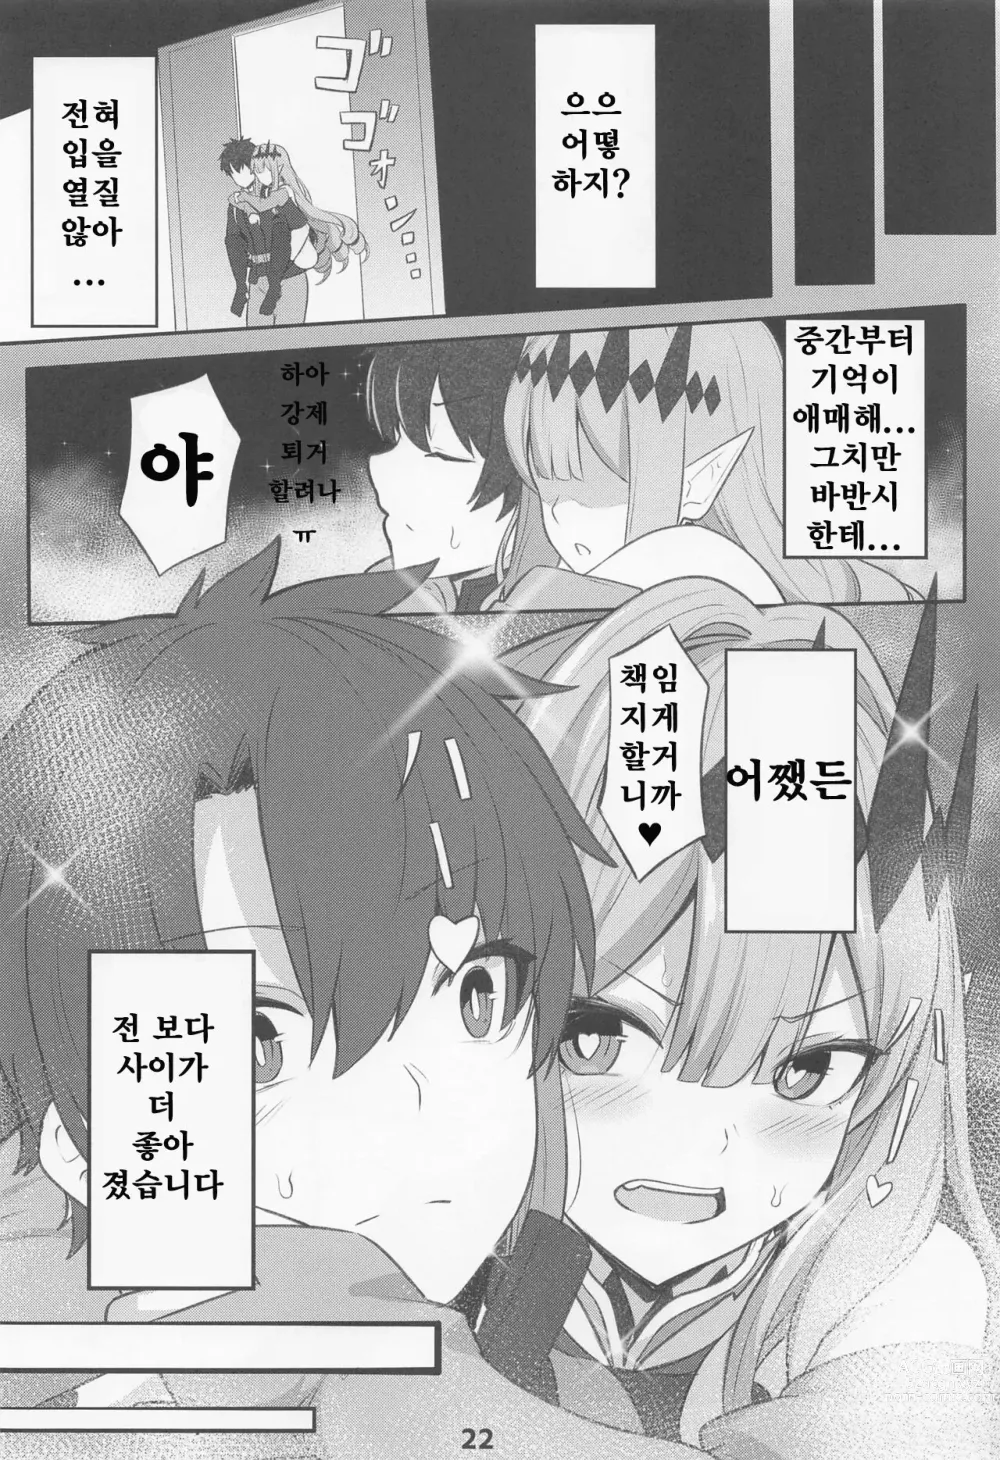 Page 23 of doujinshi 바반시와 ○스하지 않으면 나가지 못하는 방